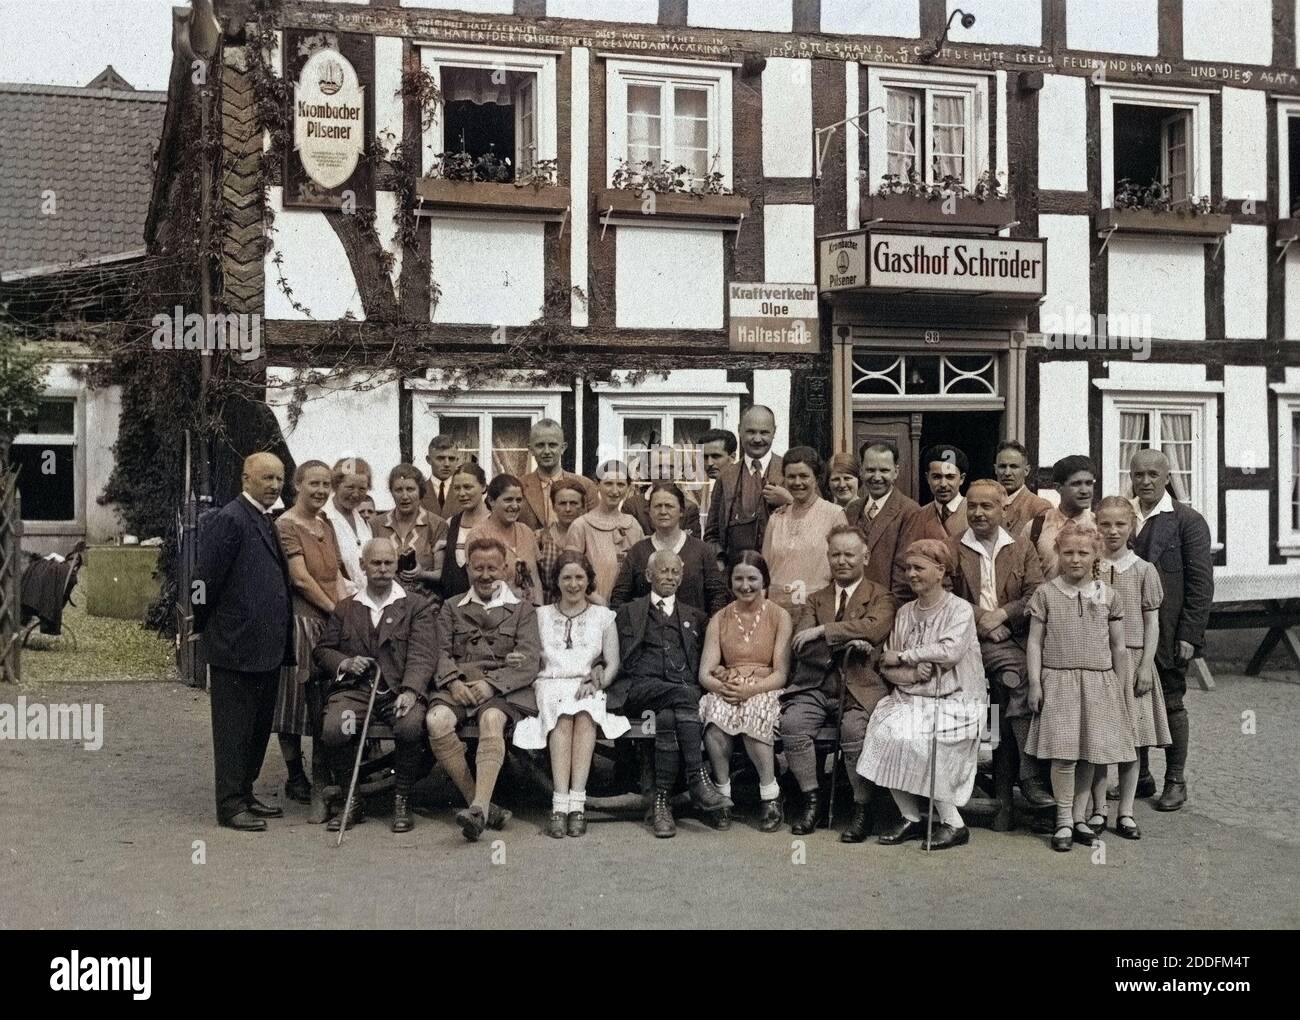 Gruppenfoto vor dem Gasthof Schröder in Welschen Ennest im Sauerland, Deutschland 1920er Jahre. Group photo in front of Schroeder's in at the village Welschen Ennest in the Sauerland region, Germany 1920s. Stock Photo